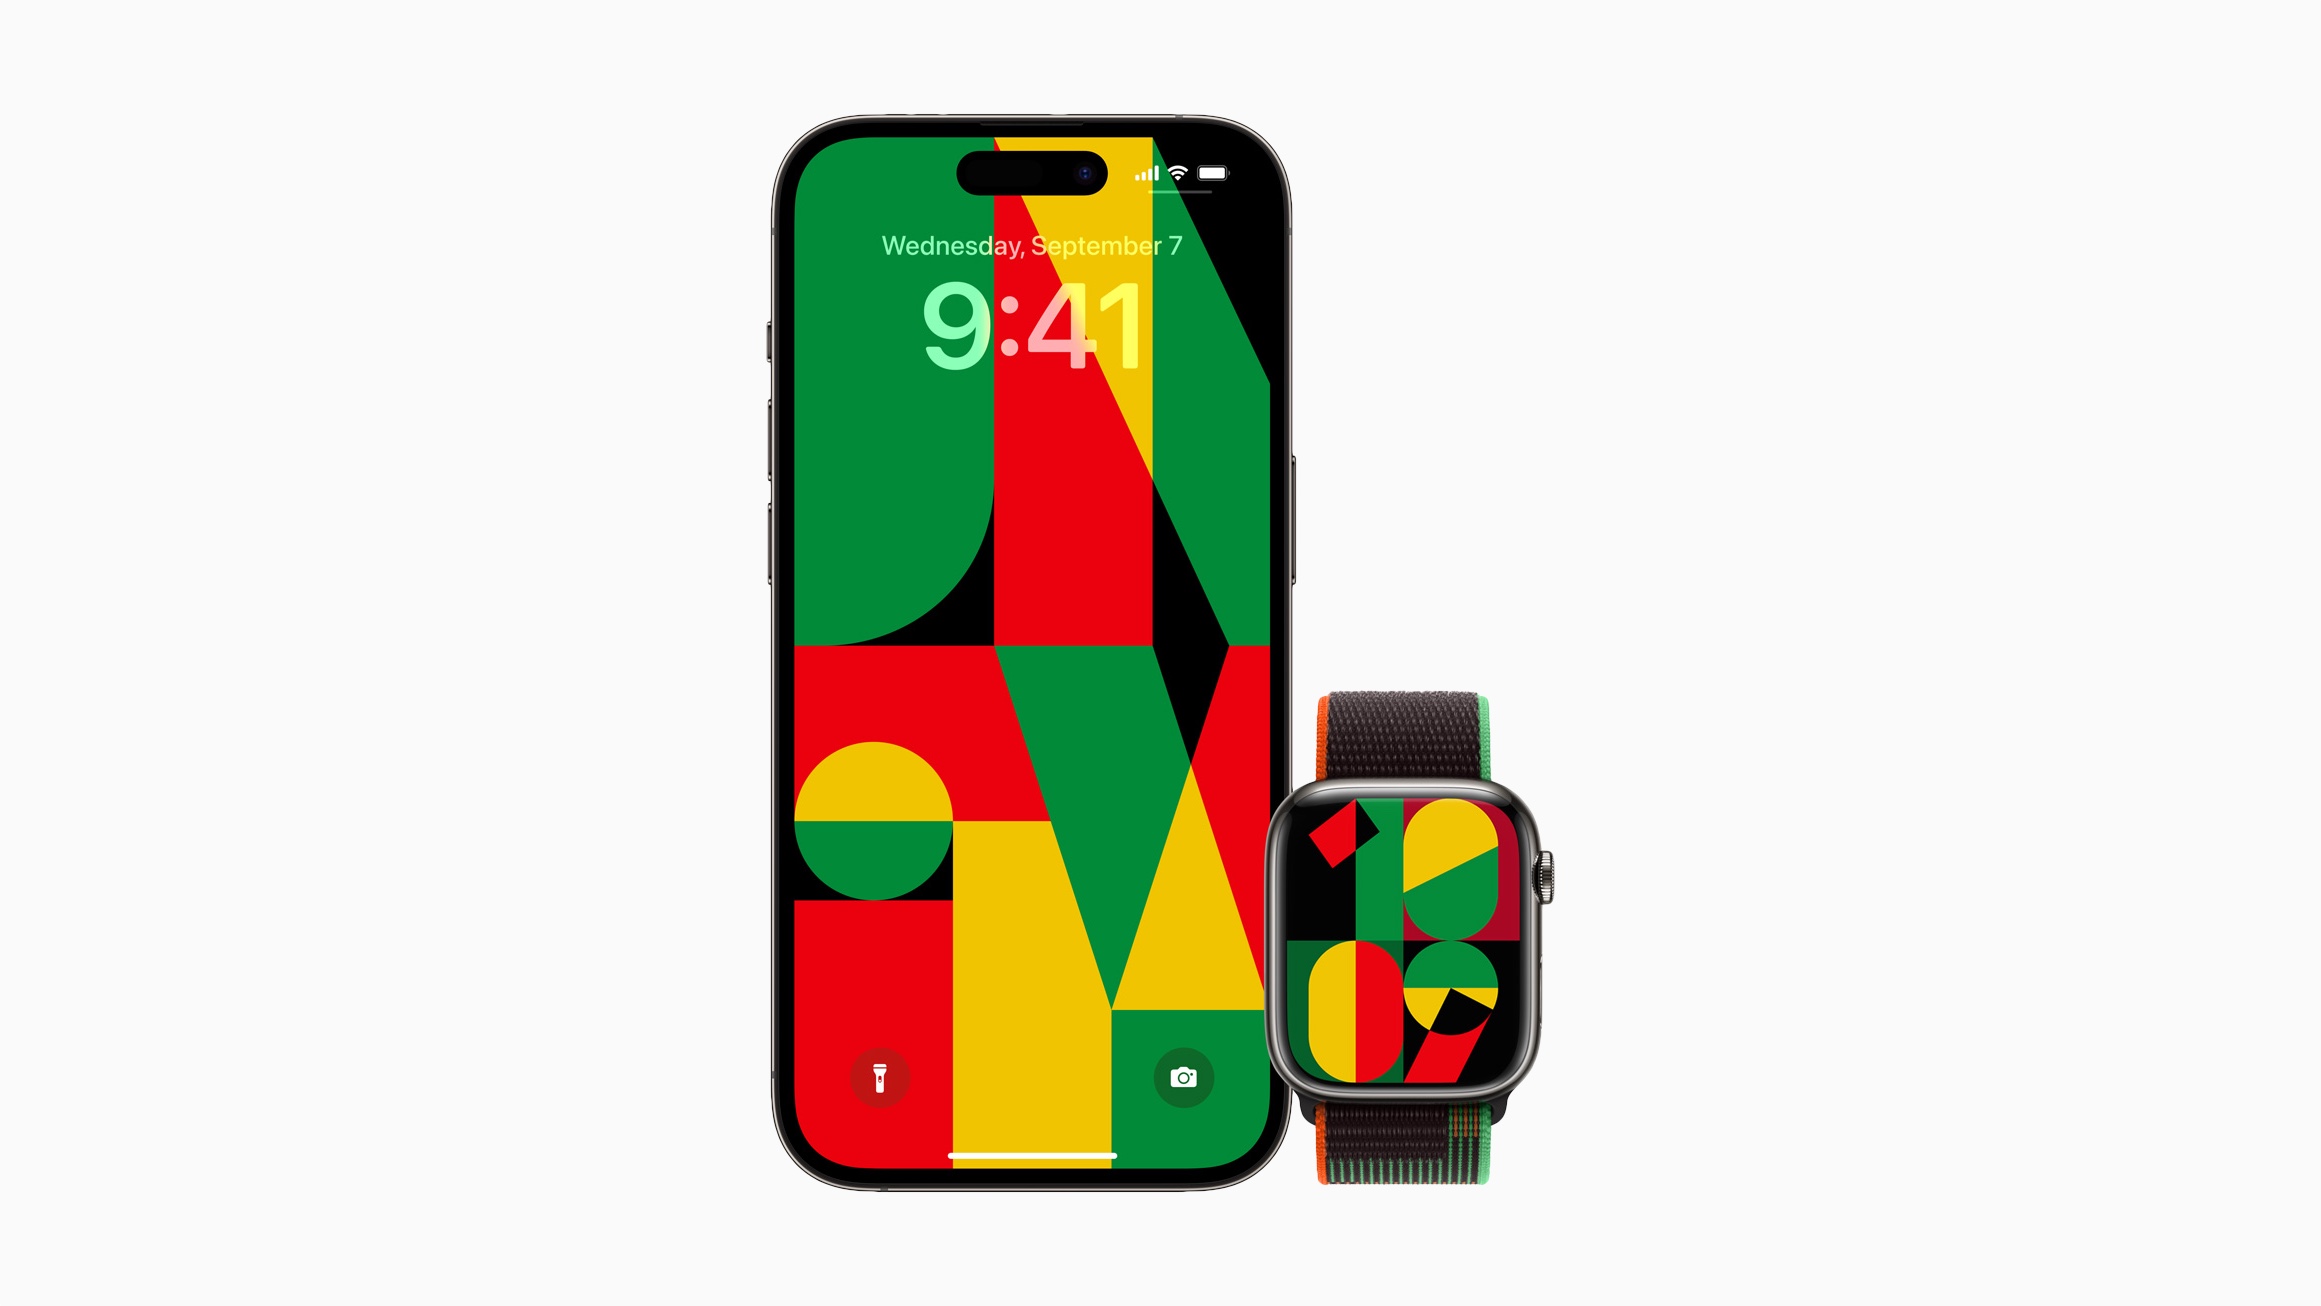 Apple Watch Black Unity Sport Loop, tampilan jam, dan wallpaper untuk iPhone terinspirasi oleh proses kreatif mozaik, semangat komunitas kulit hitam, dan kekuatan persatuan.